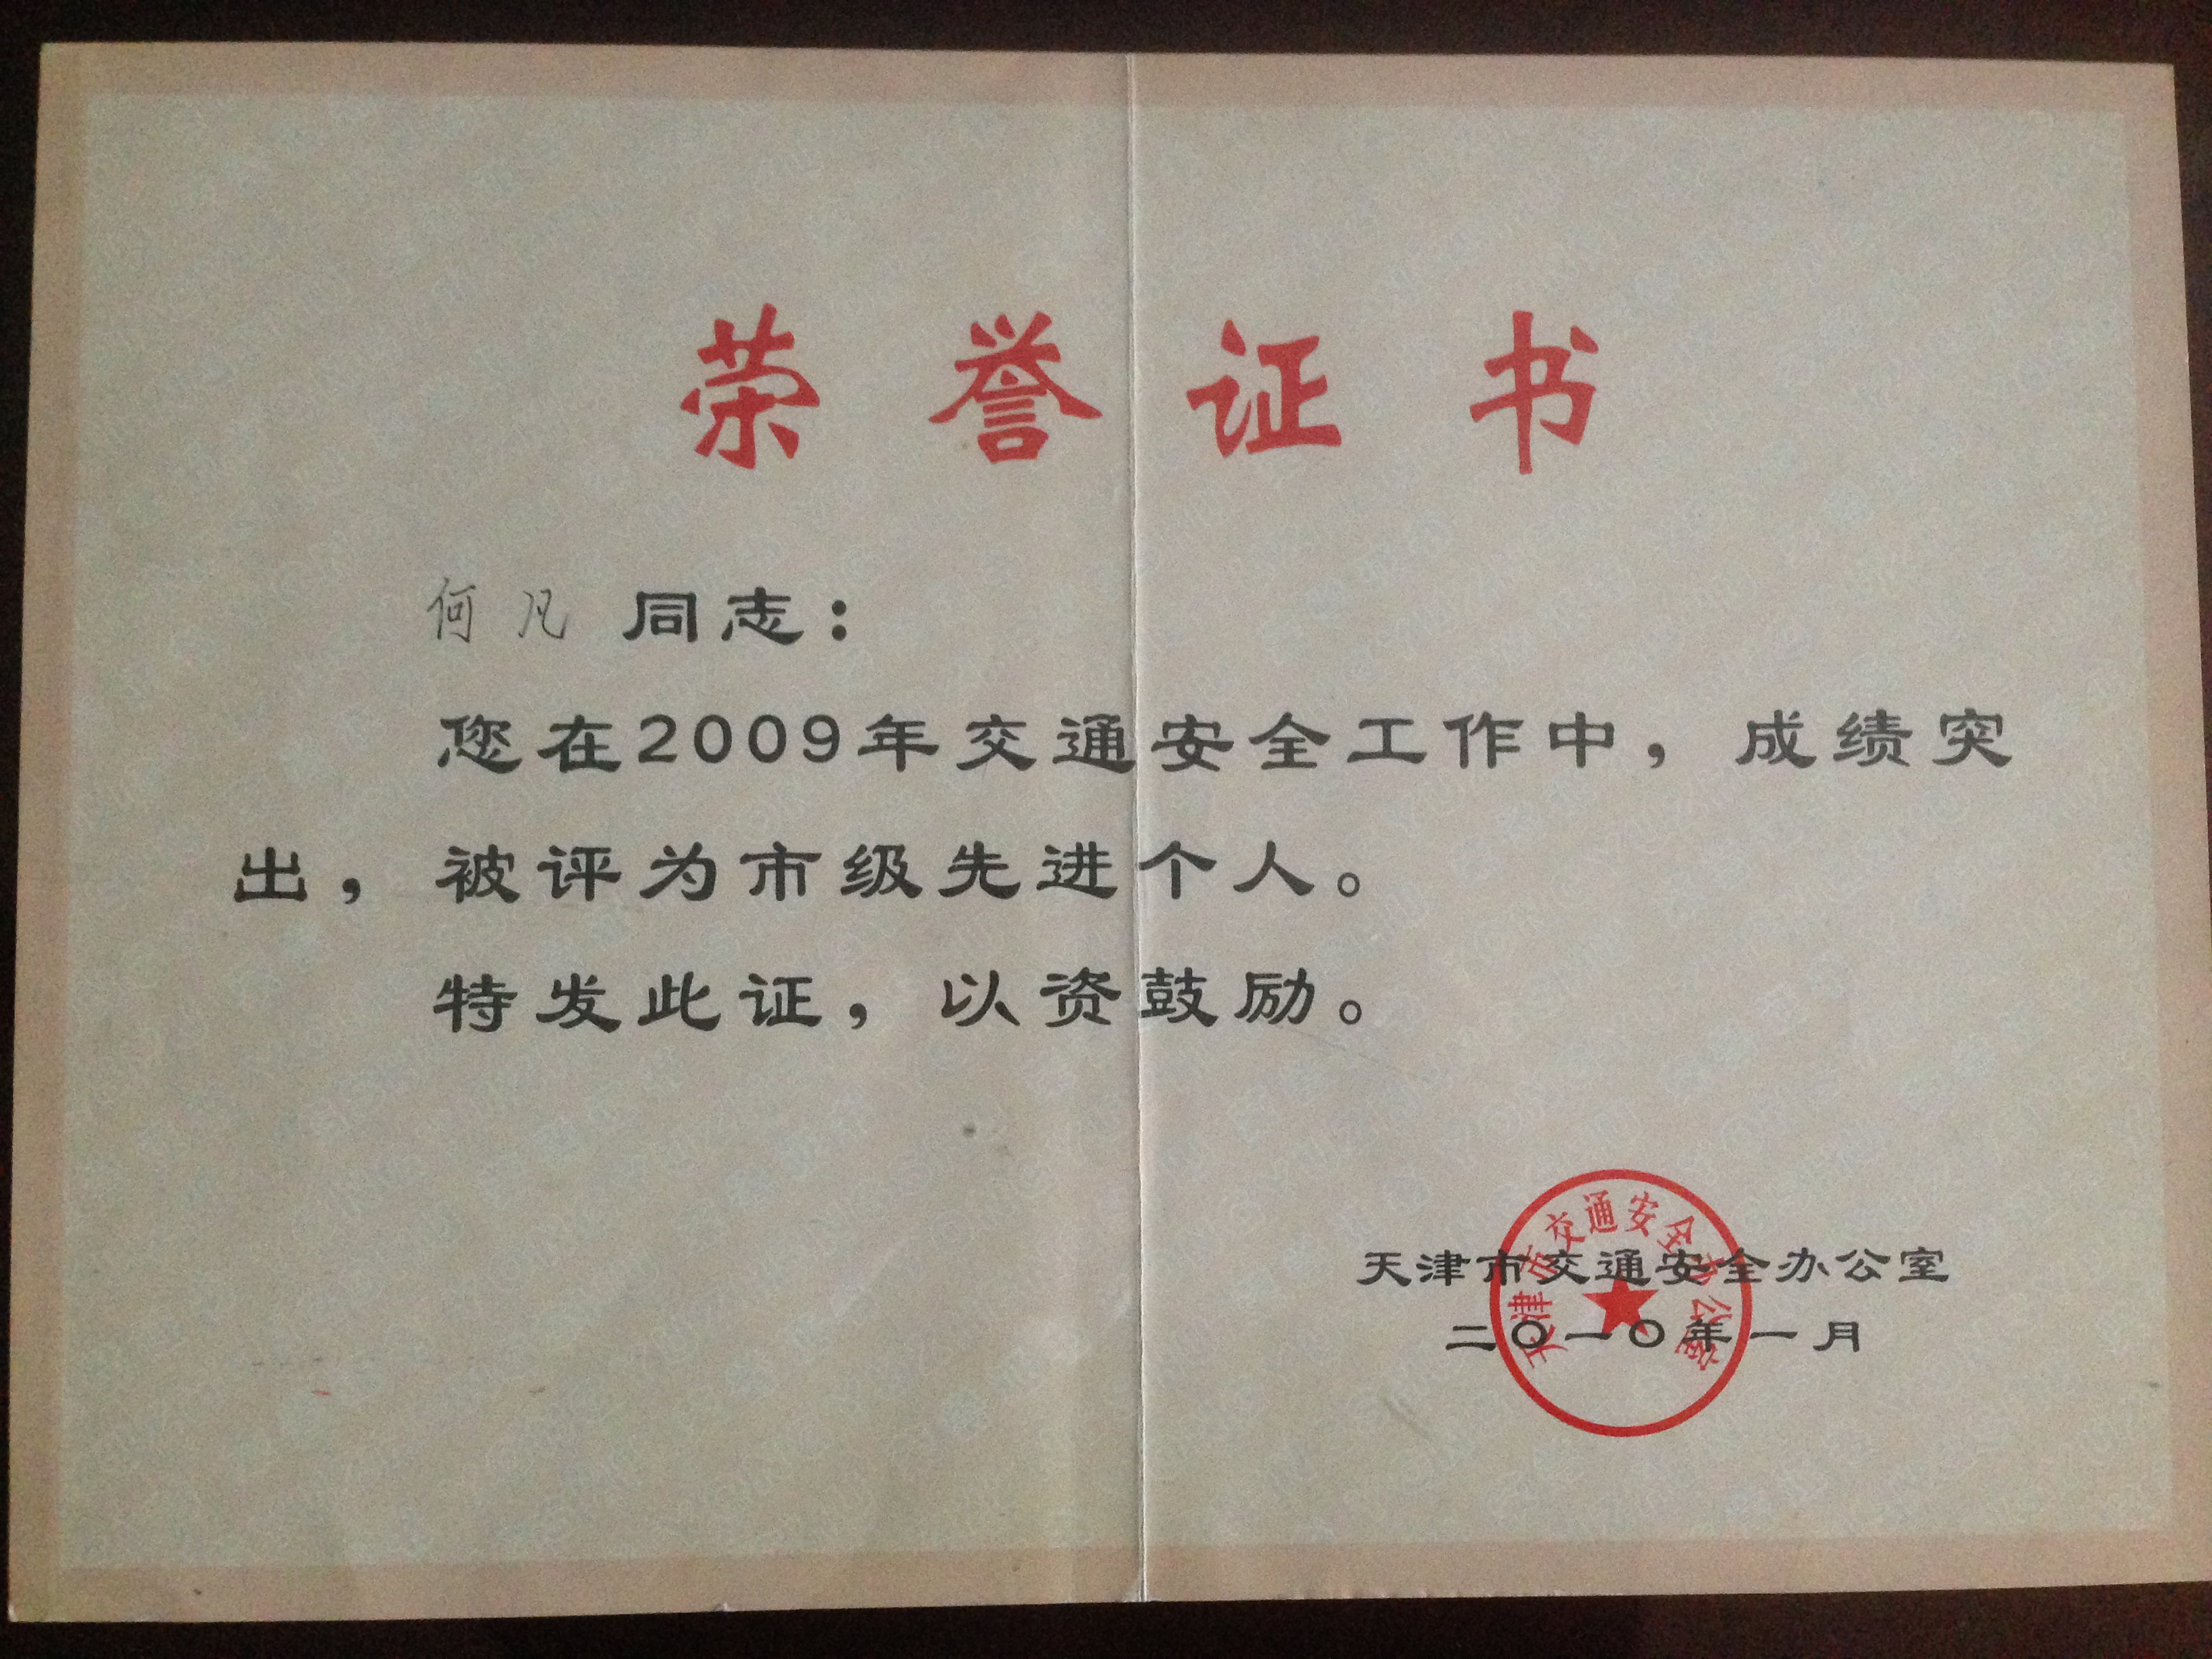 天津班车租赁公司及法人荣誉证书(图17)